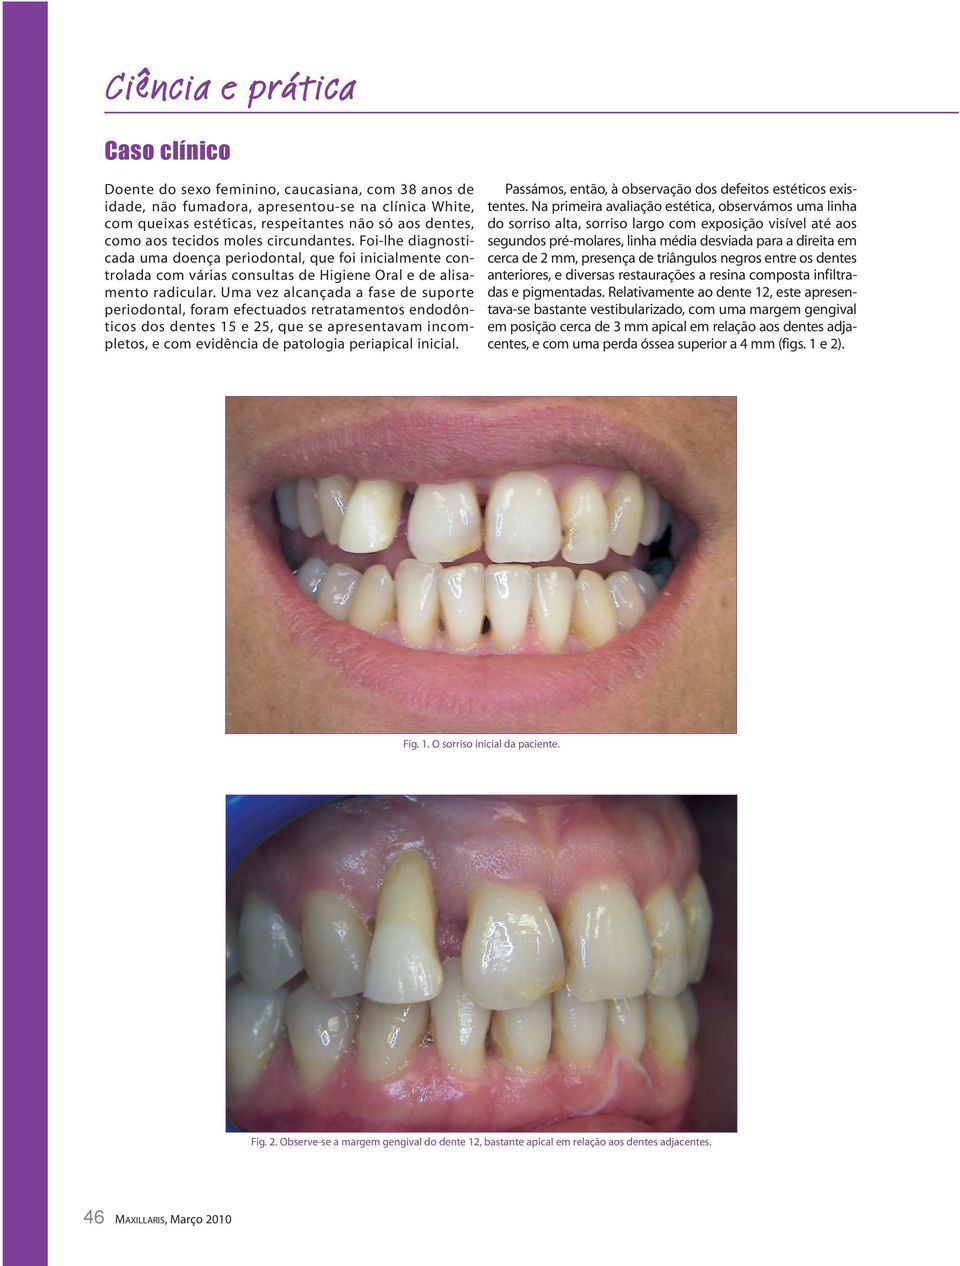 Uma vez alcançada a fase de suporte periodontal, foram efectuados retratamentos endodônticos dos dentes 15 e 25, que se apresentavam incompletos, e com evidência de patologia periapical inicial.